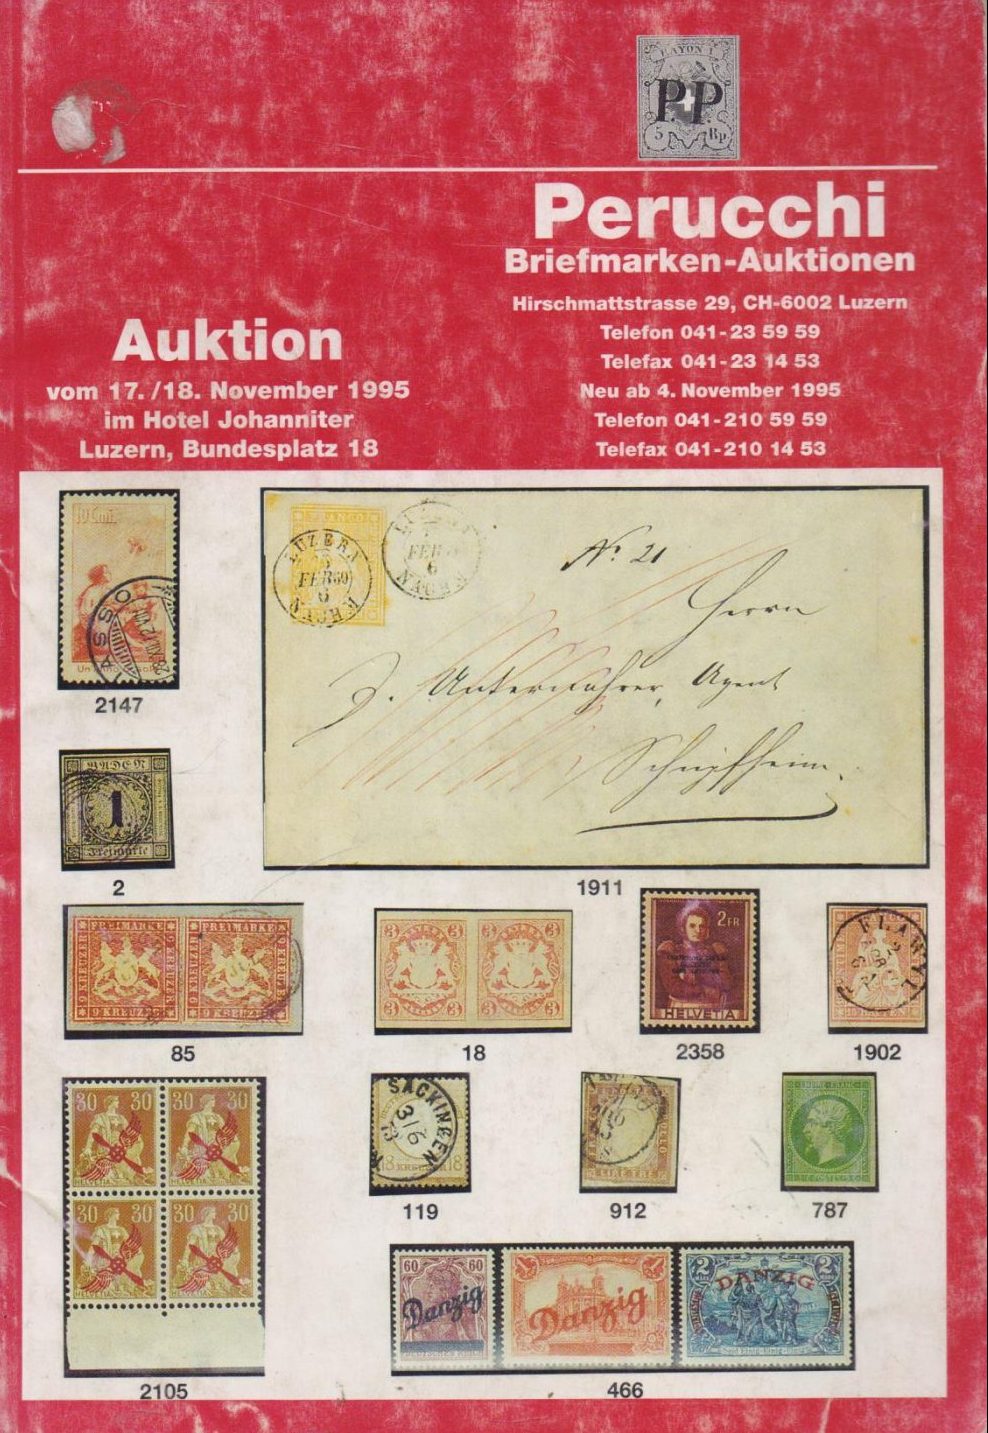 Perruchi Briefmarken-Auktionen G.A.